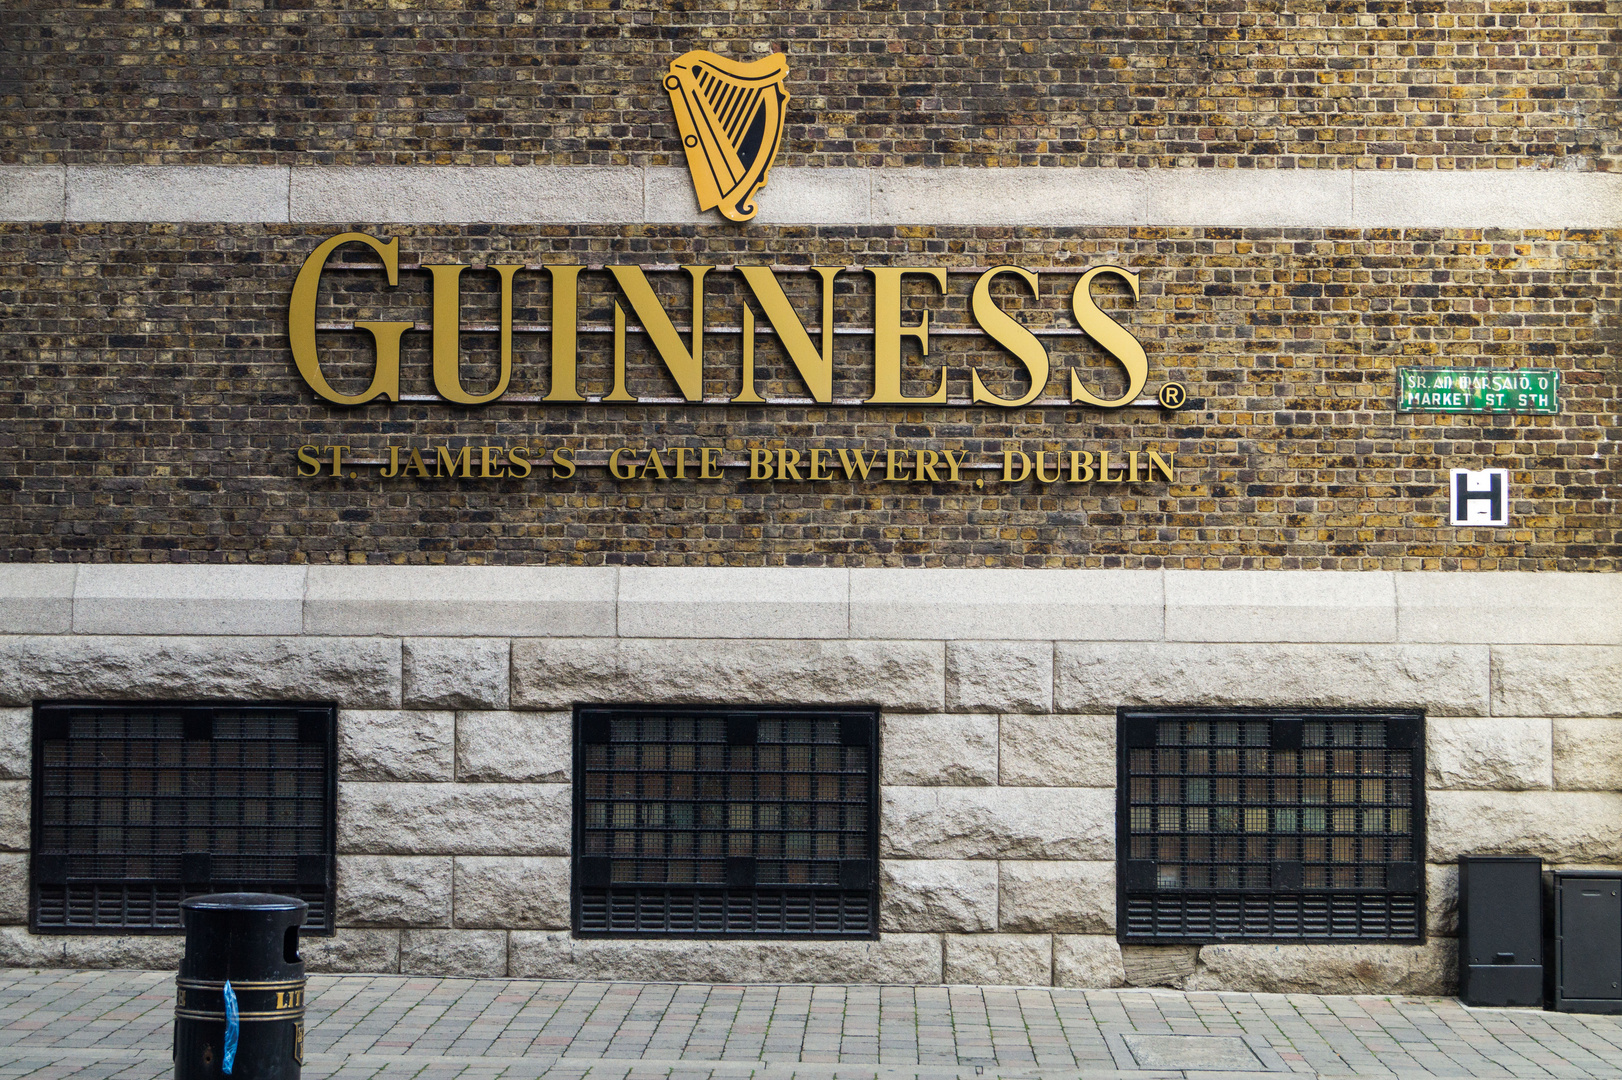 Guinness Brewery Dublin